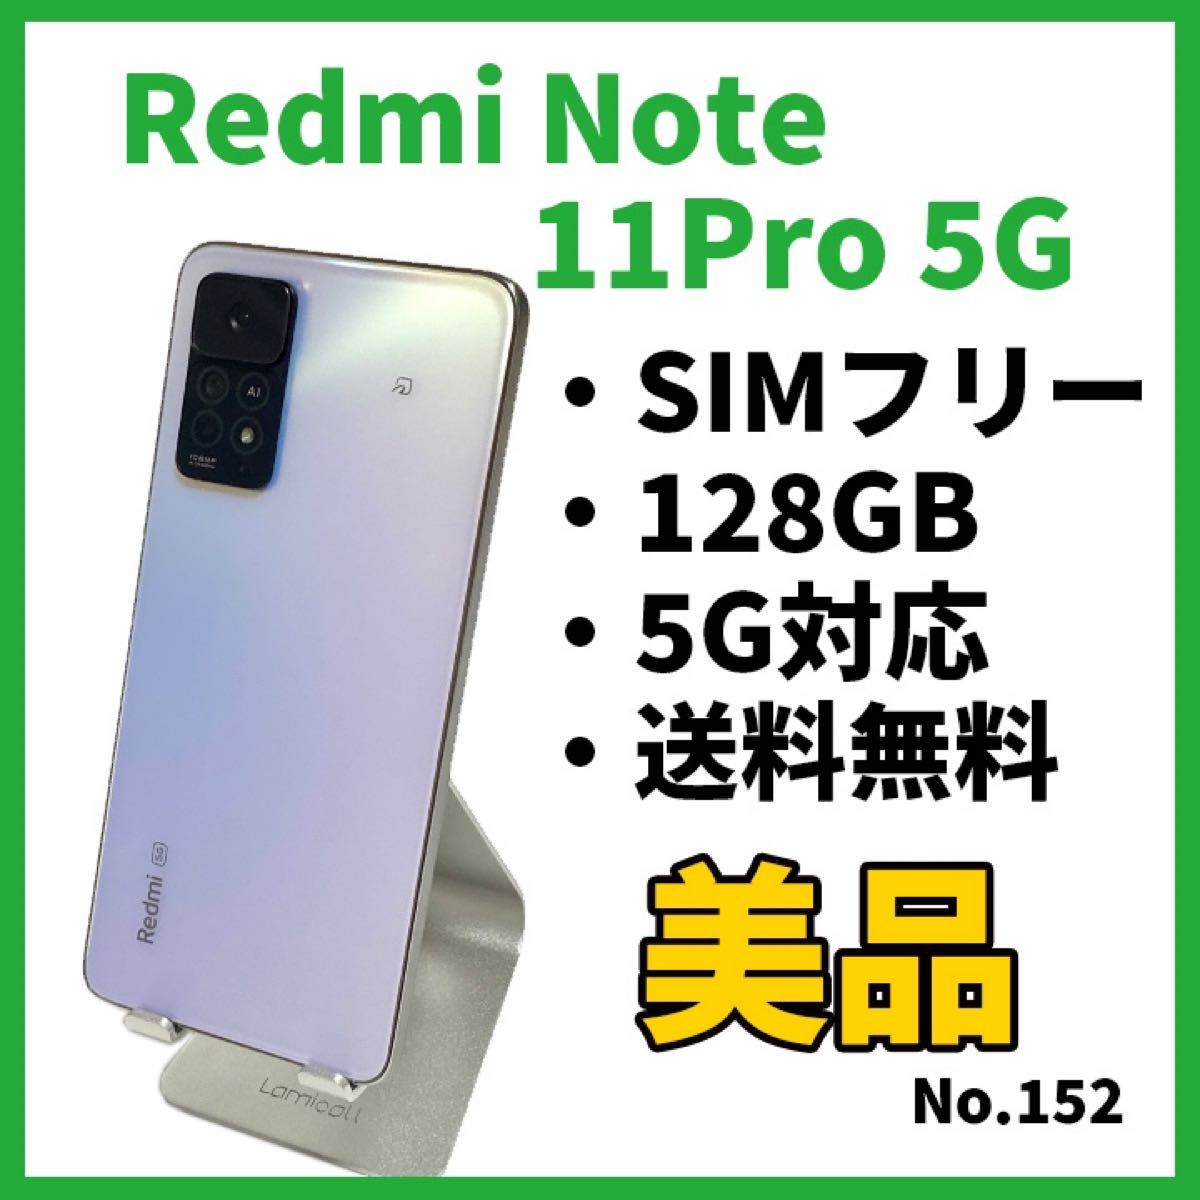 No.152【Xiaomi】Redmi Note 11Pro 5G | connectedfire.com